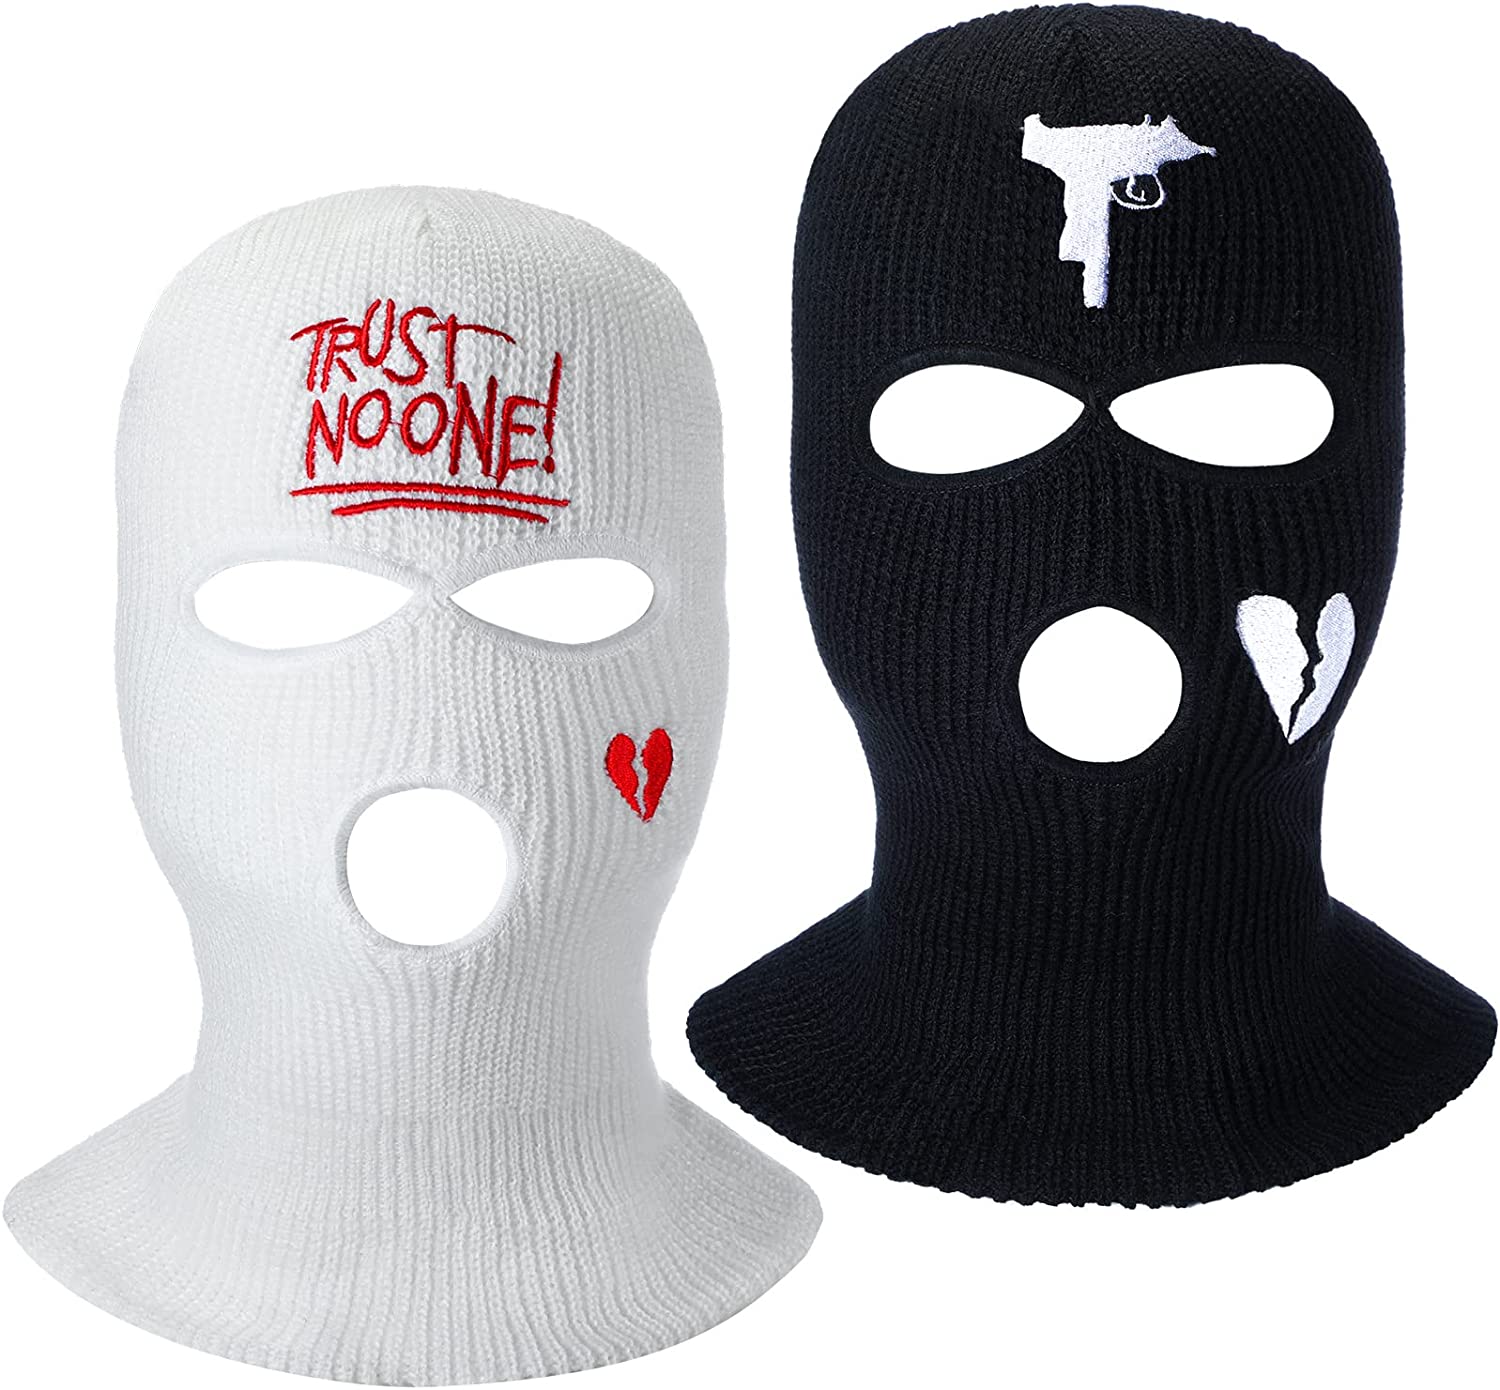 UNCO- Balaclava Face Mask, Black Ski Mask for Men & Women, Full Face Mask,  Face Mask for Winter, Balaclava Ski Mask, Face Cover, Ski Face Mask, Ski